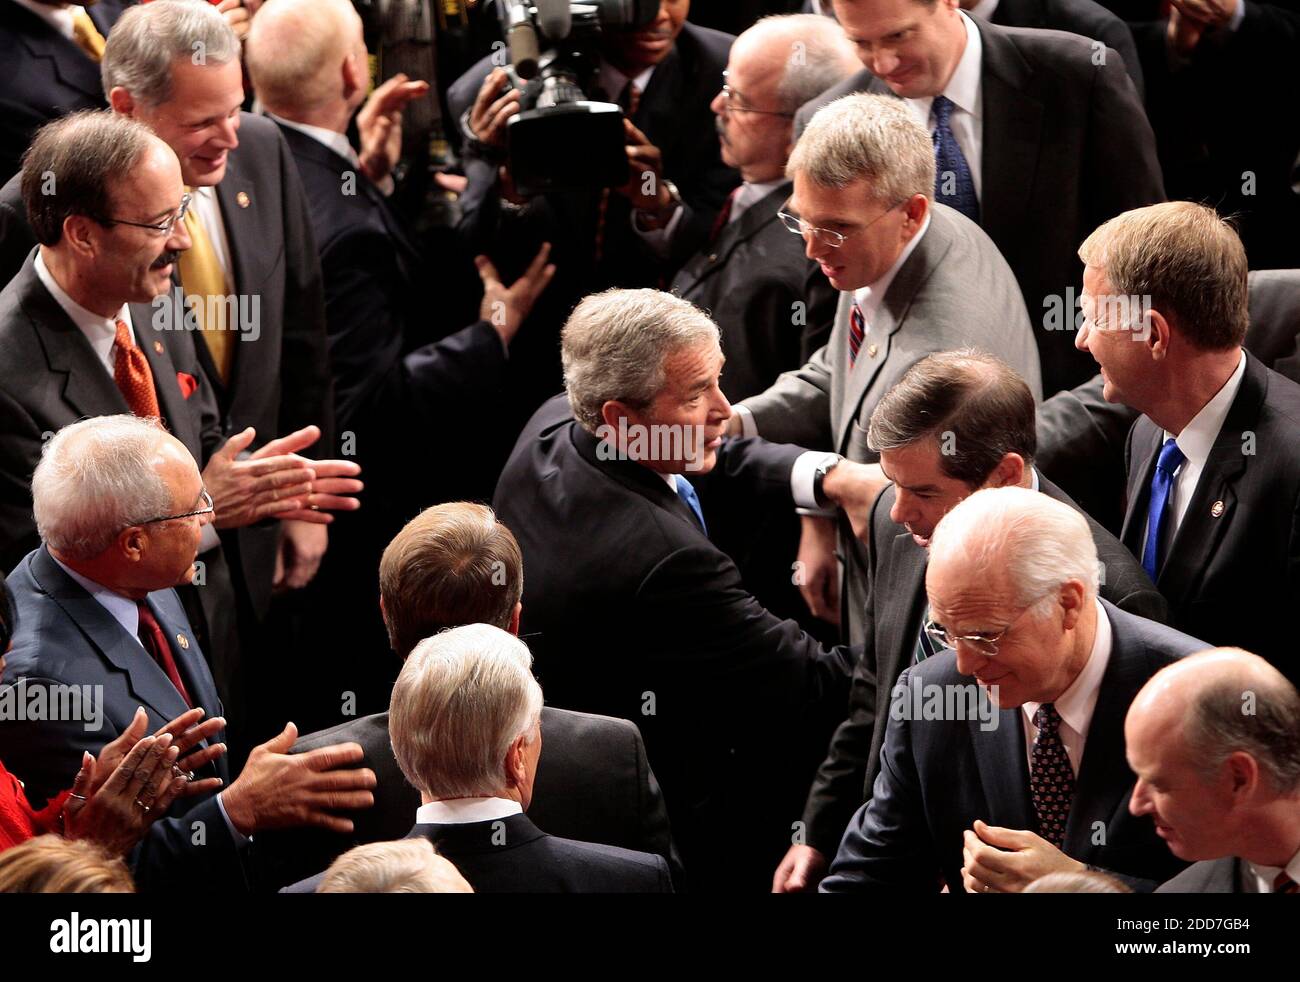 Präsident George W. Bush schüttelt die Hände, als er ankommt, um seine jährliche und letzte Rede zur Lage der Union bei einer gemeinsamen Sitzung des Kongresses in der Kammer des US-Repräsentantenhauses in Washington, DC, USA, am Montag, dem 28. Januar 2008 zu halten. Foto von Chuck Kennedy/MCT/ABACAPRESS.COM Stockfoto